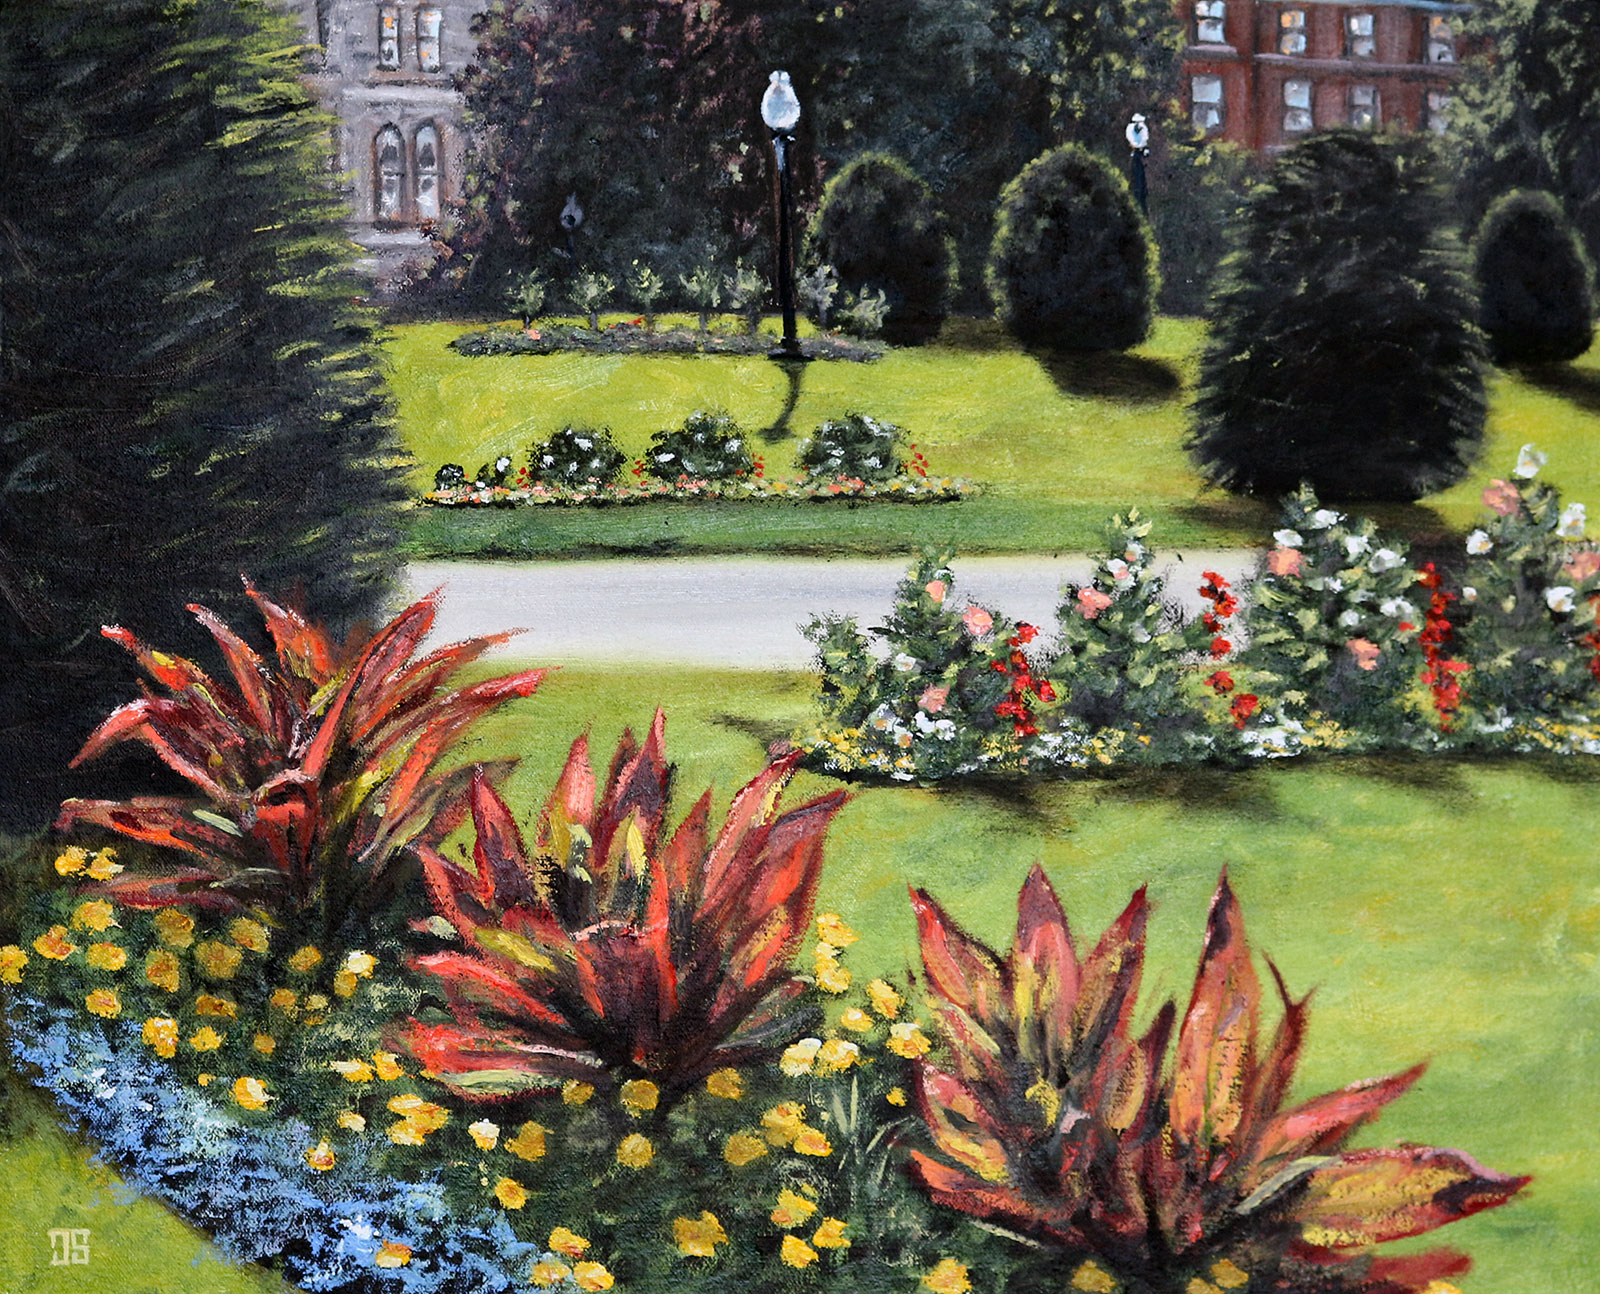 Flowers in Boston Public Garden by Jeffrey Dale Starr